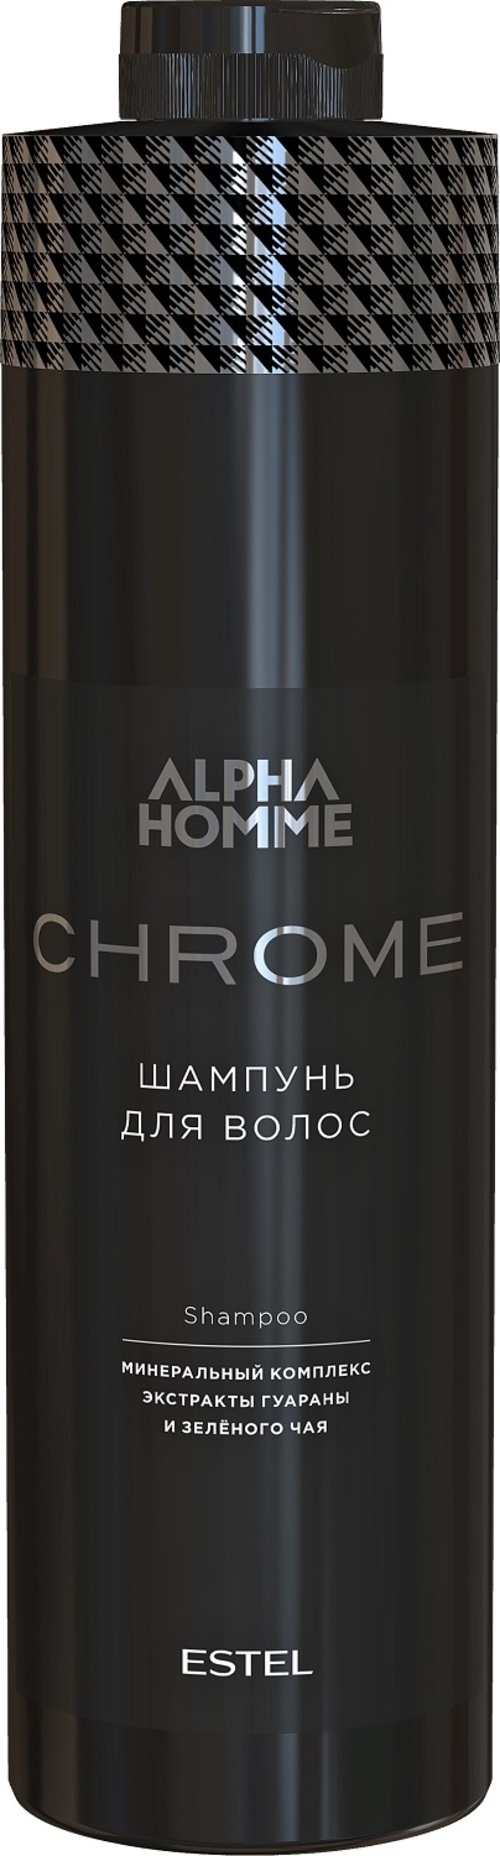 Эстель Шампунь для волос Estel Alpha Homme Chrome, 1000 мл (Estel, Alpha homme) фото 0